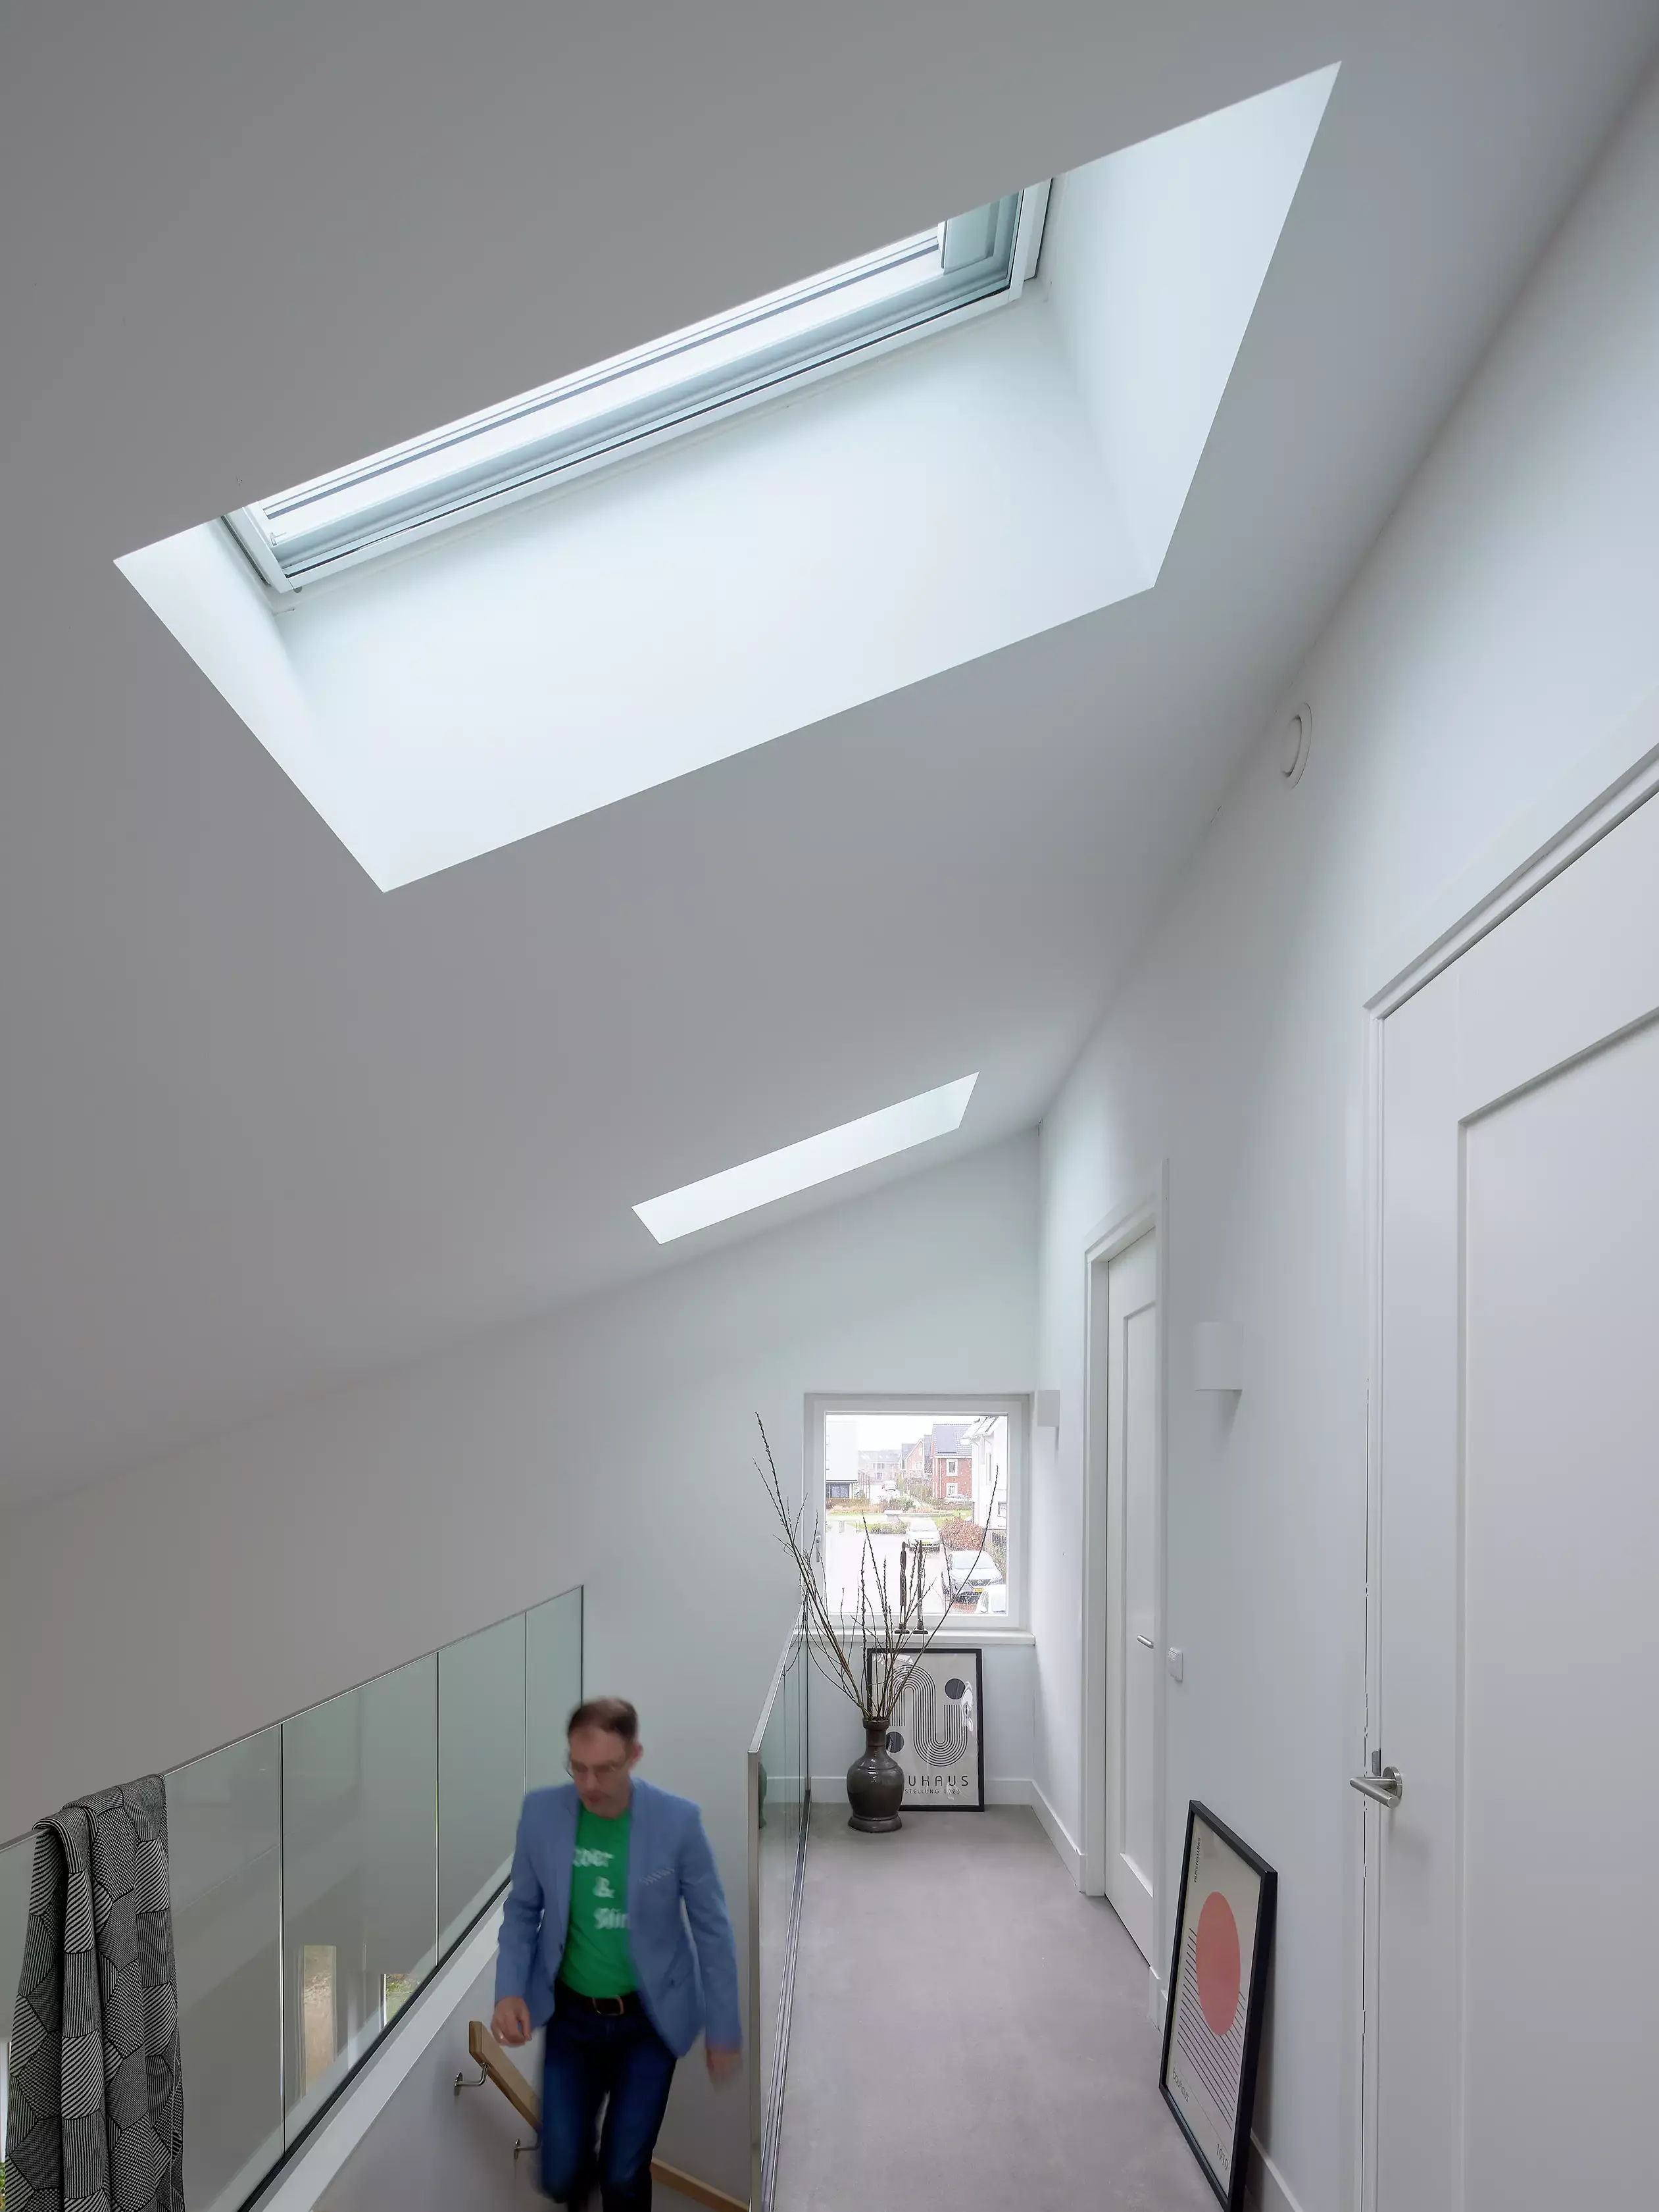 Couloir moderne avec lumière naturelle provenant d'une fenêtre de toit VELUX, balustrade en verre et décoration minimaliste.